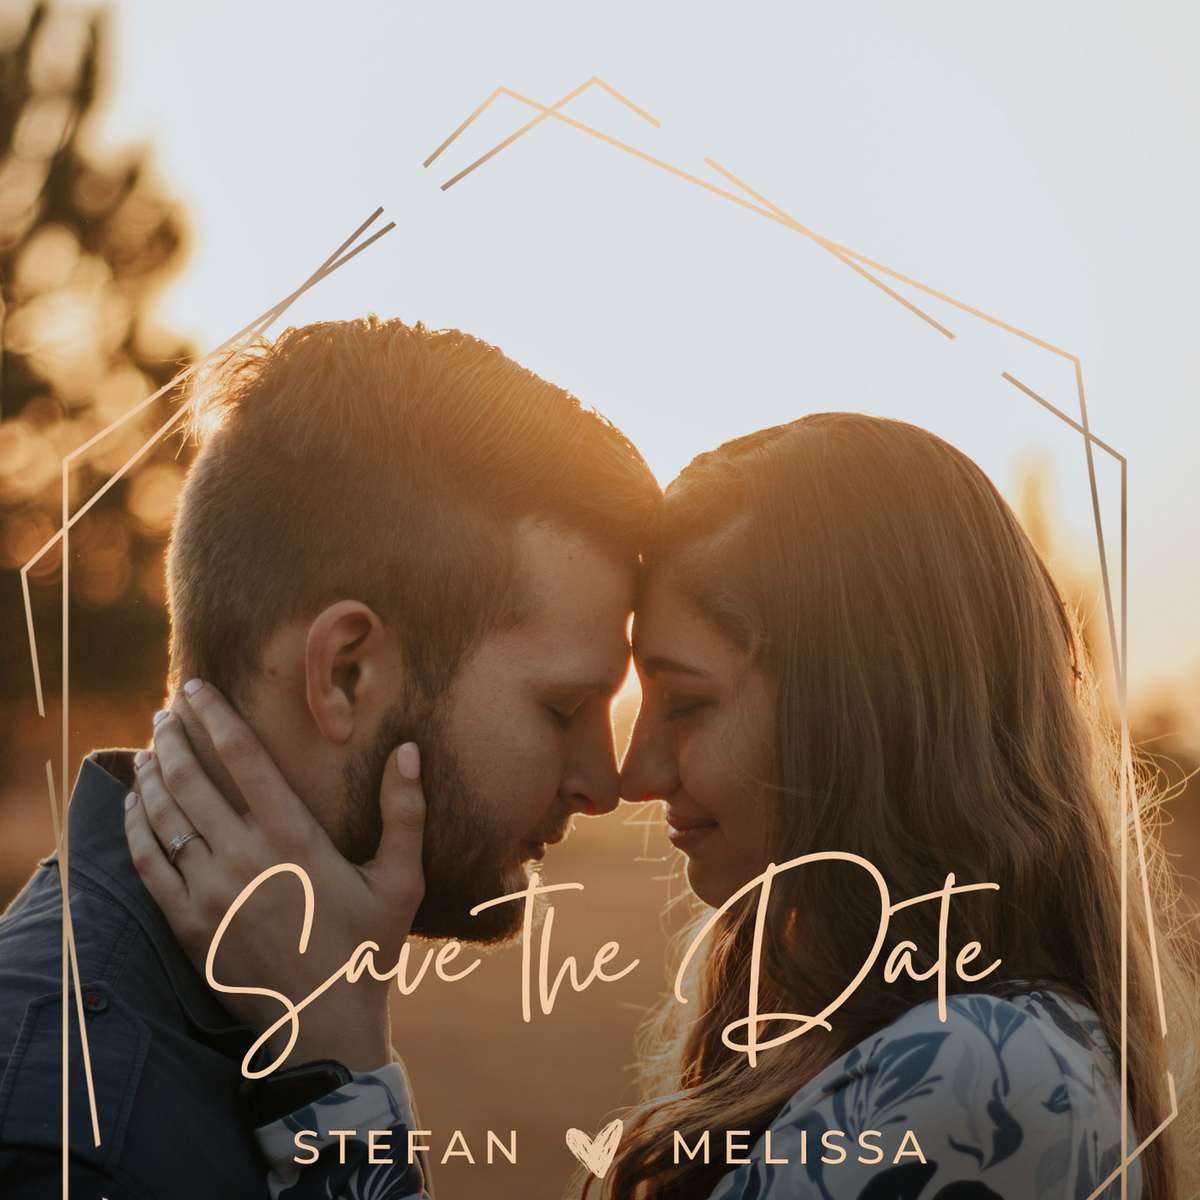 Stefan und Melissa – Save the Date Schiebepuzzle online